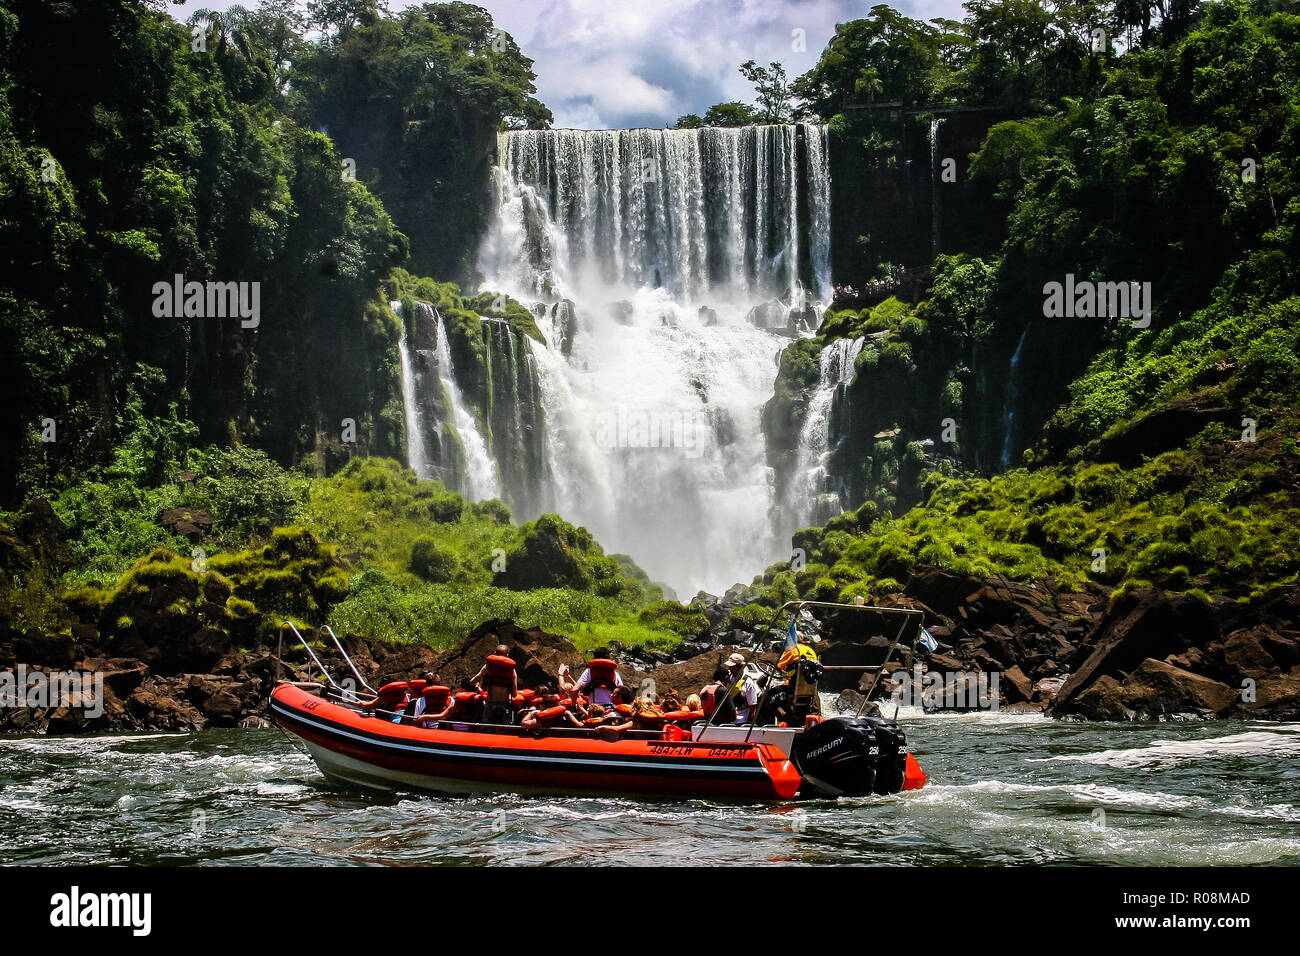 Des promenades en bateau de vitesse sous l'eau au cours de la cascade Iguacu falls à Iguaçu, Brésil le 18 février 2008 Banque D'Images